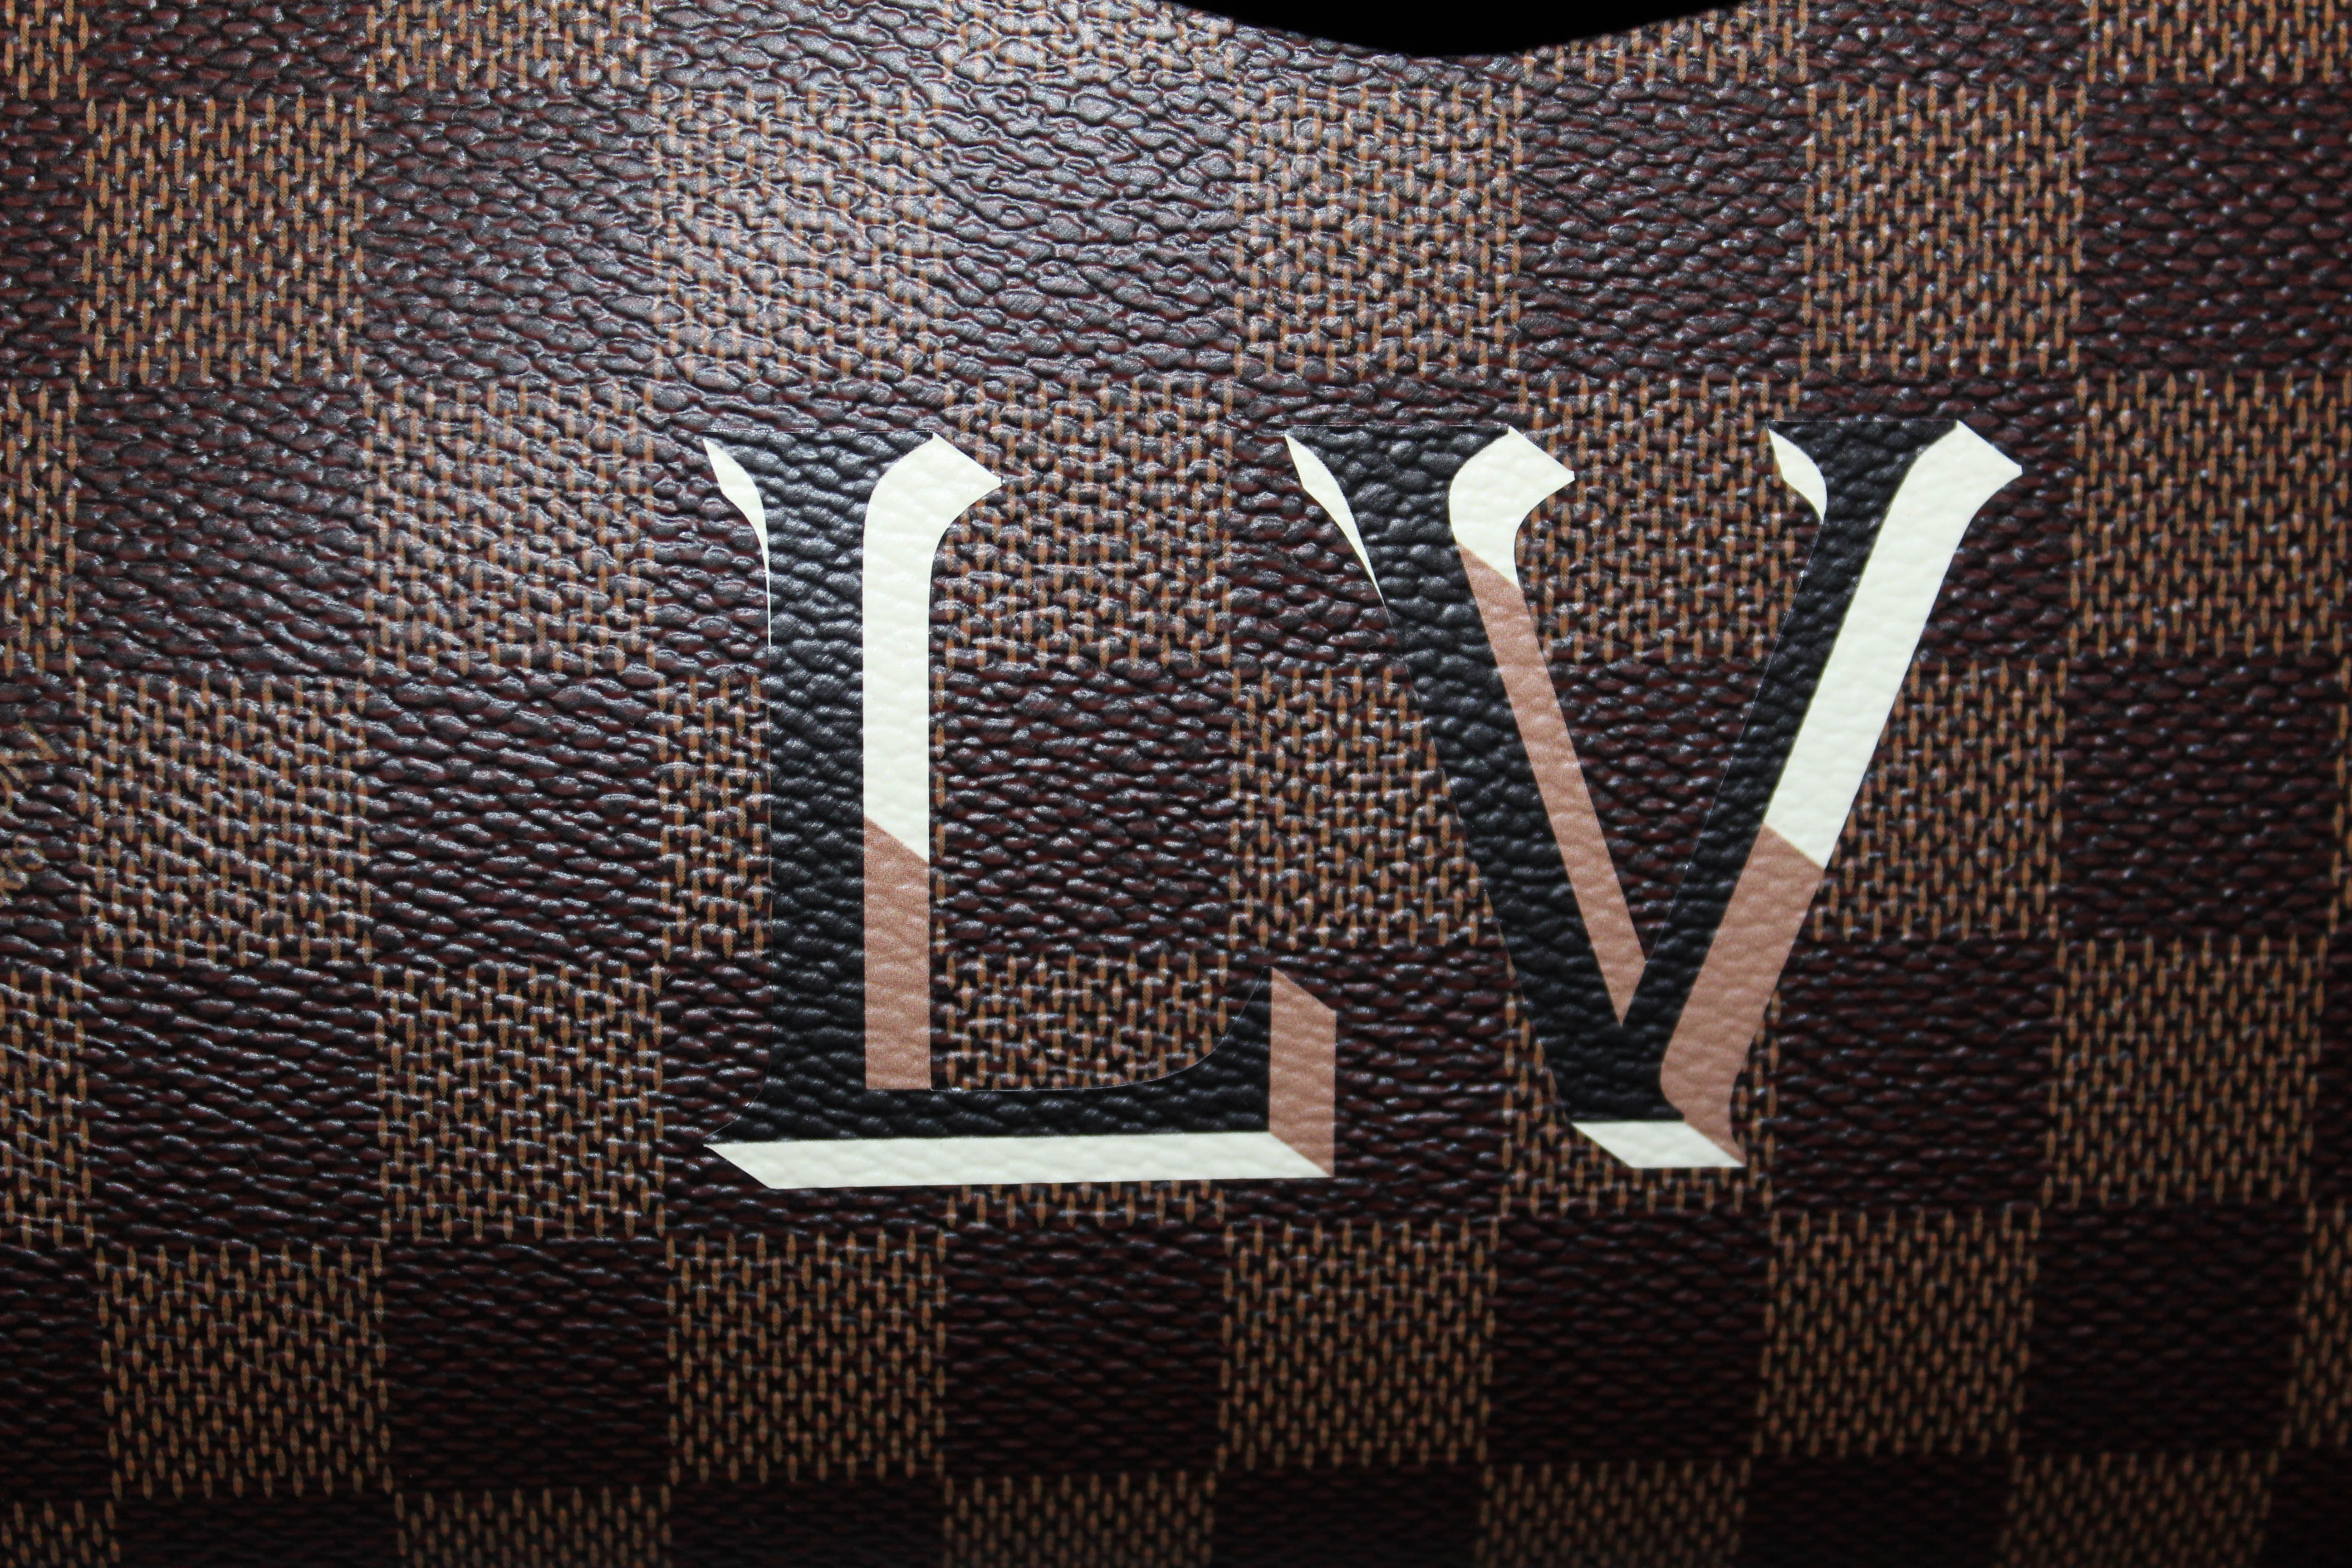 Authentic Louis Vuitton Damier Ebene Beaubourg MM Handbag/Shoulder Bag